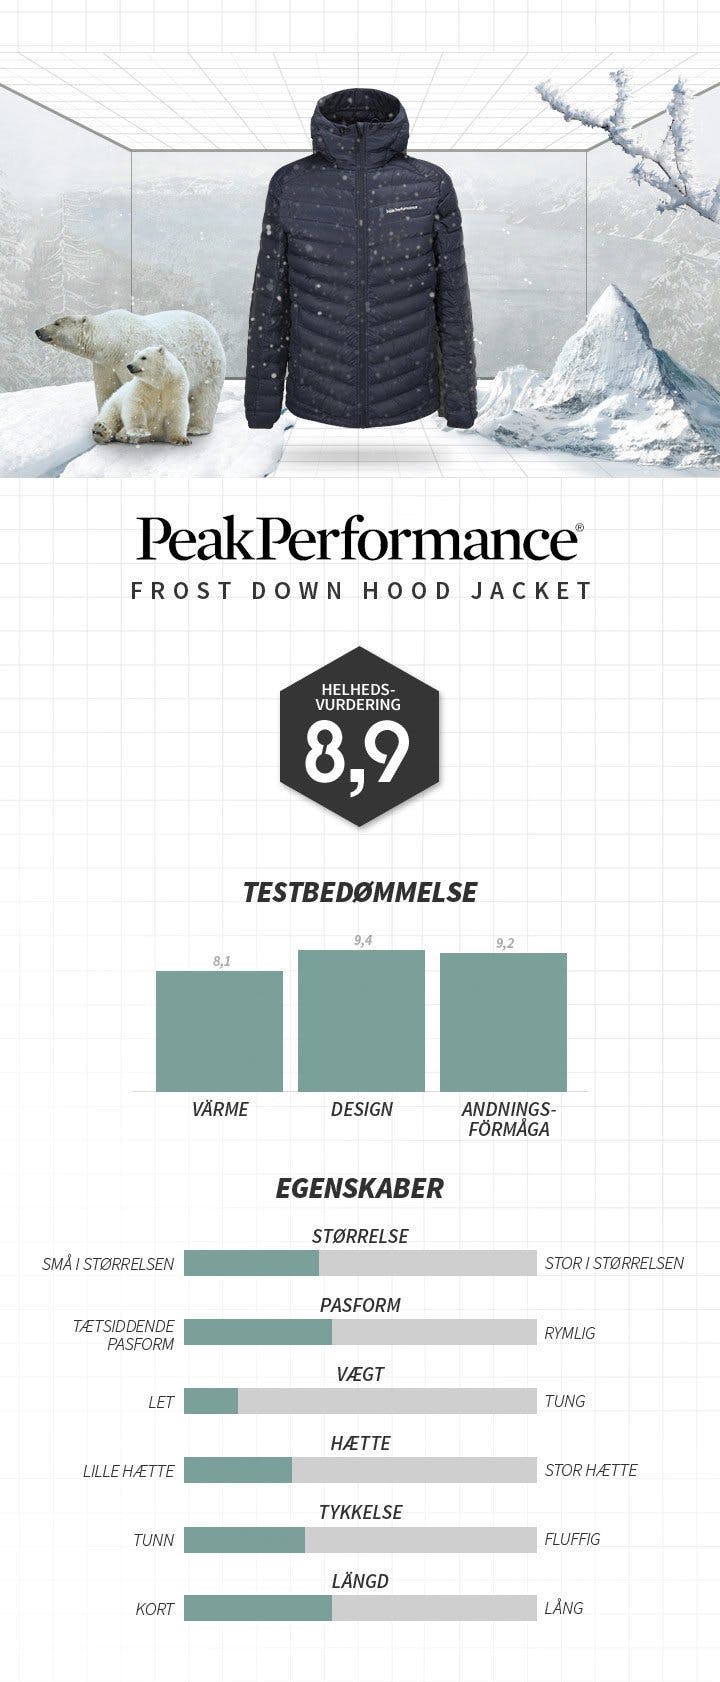 Dunjakken fra Peak Performance som er bedst i – Sportamore.com